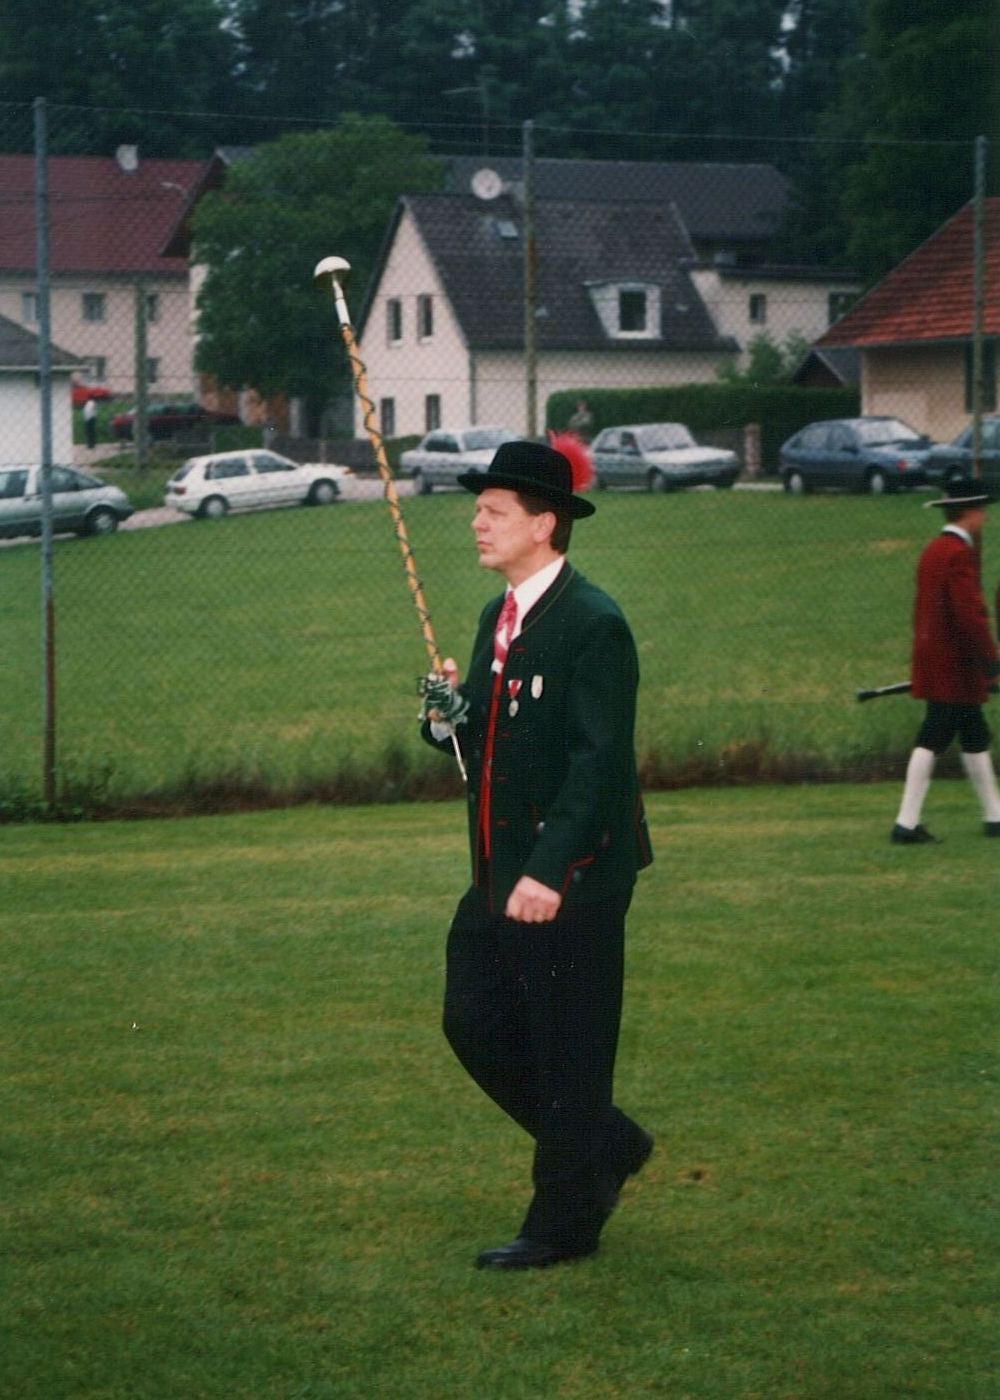 Marschwertung 1994 in Steinerkirchen